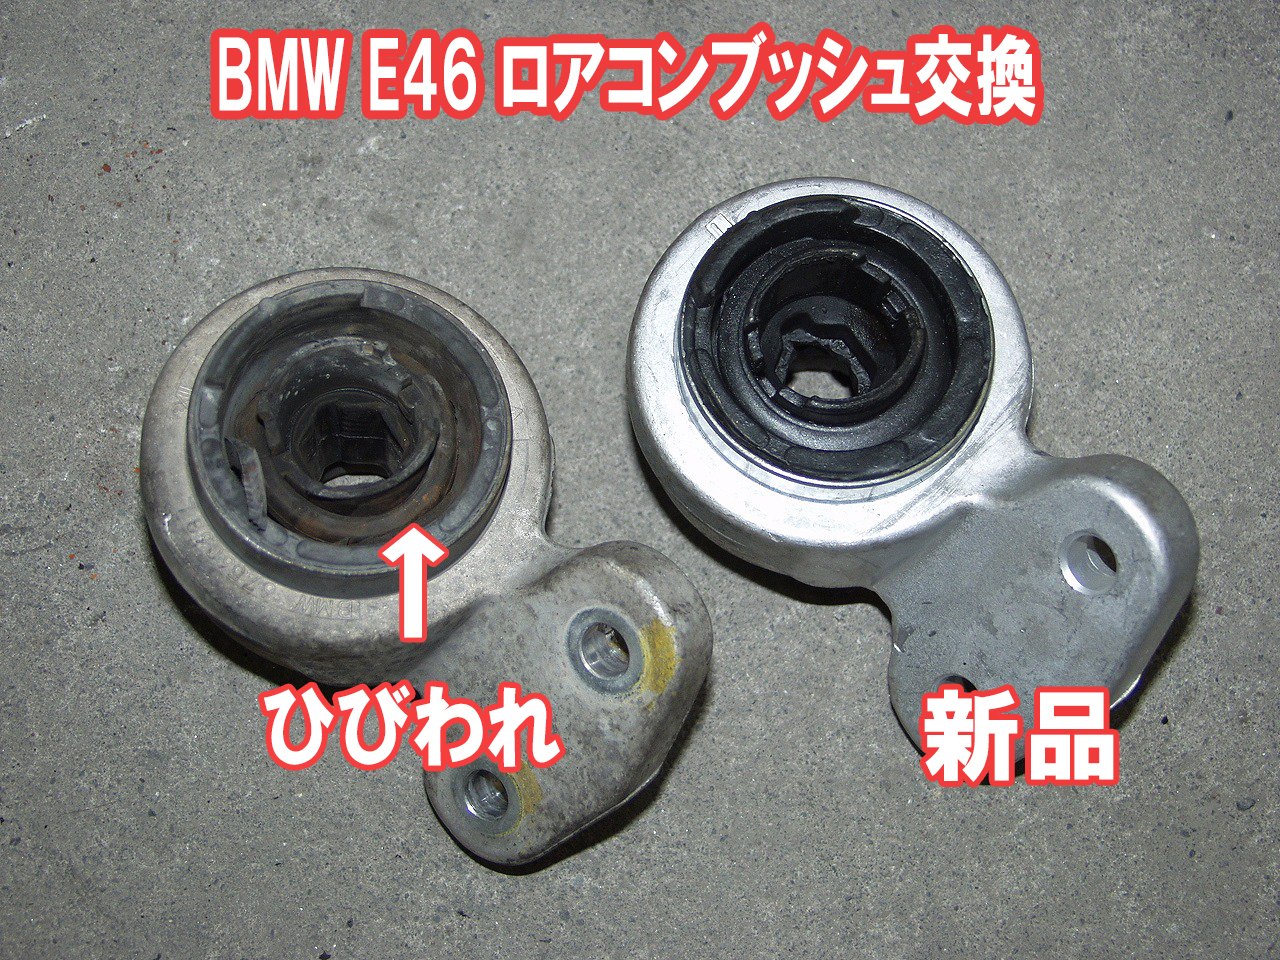 BMW E46のブッシュ交換は社外部品がお得です。